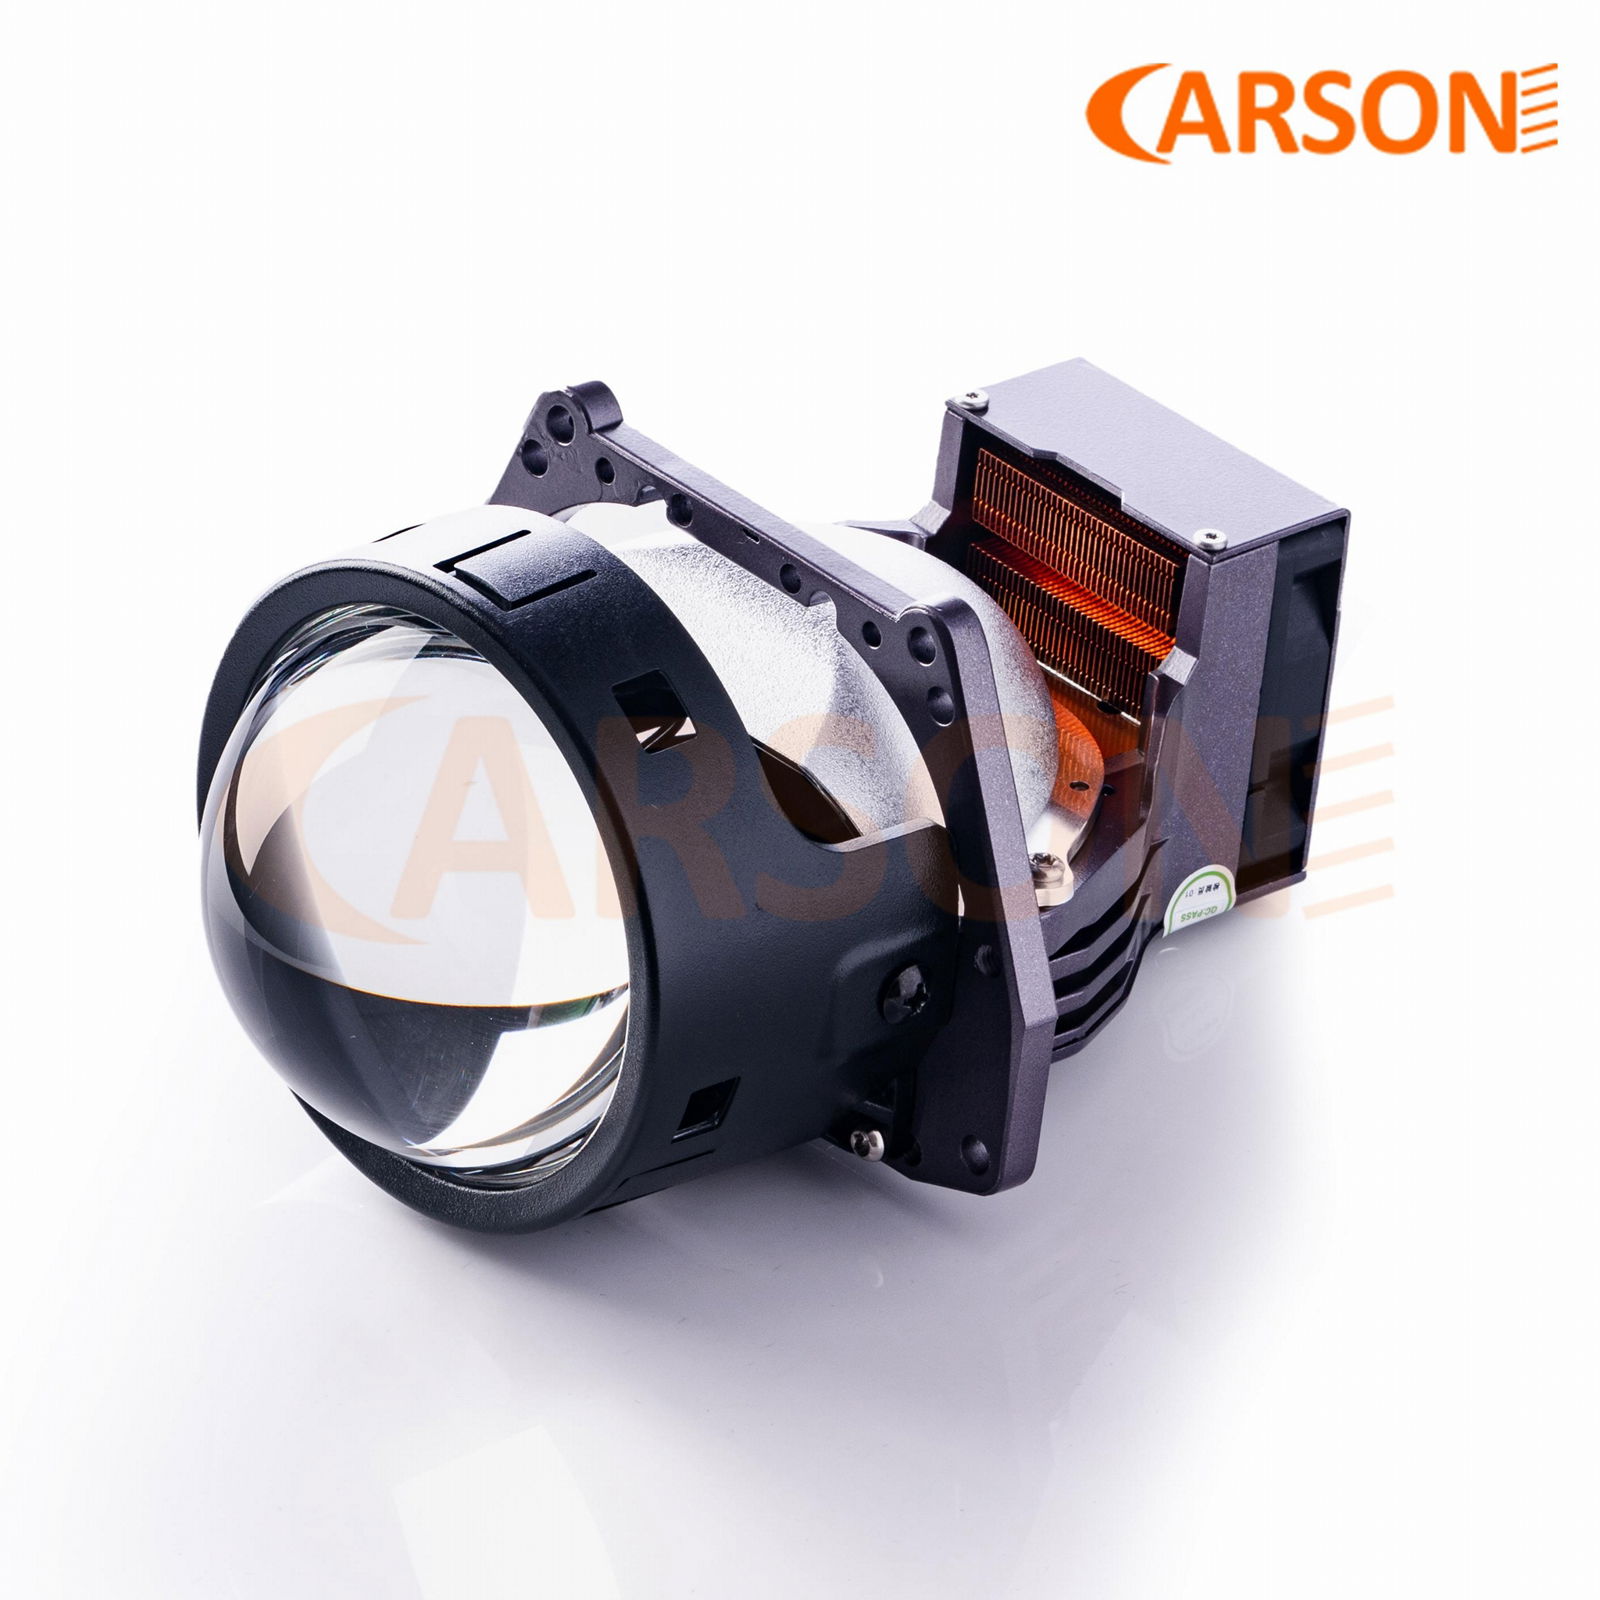 Carson CS9 Headlight 9+1+1OSRAM CSPThree Reflectors design Bi LED Lens projector 3